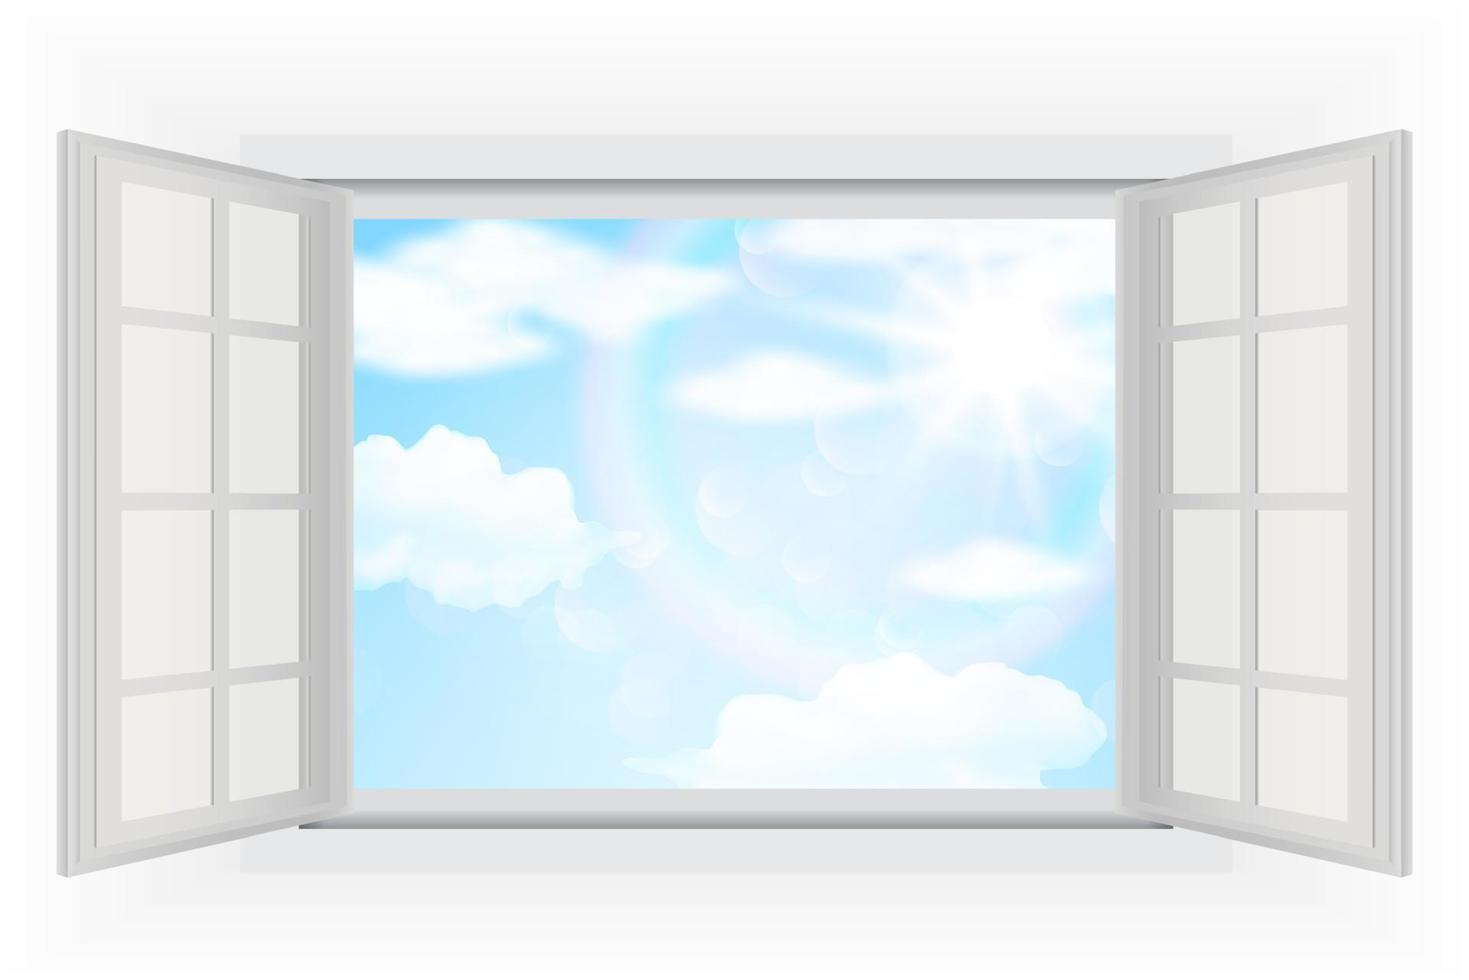 öppet fönster, med riktigt starkt solljus, moln och blå himmel. vektor illustrationer